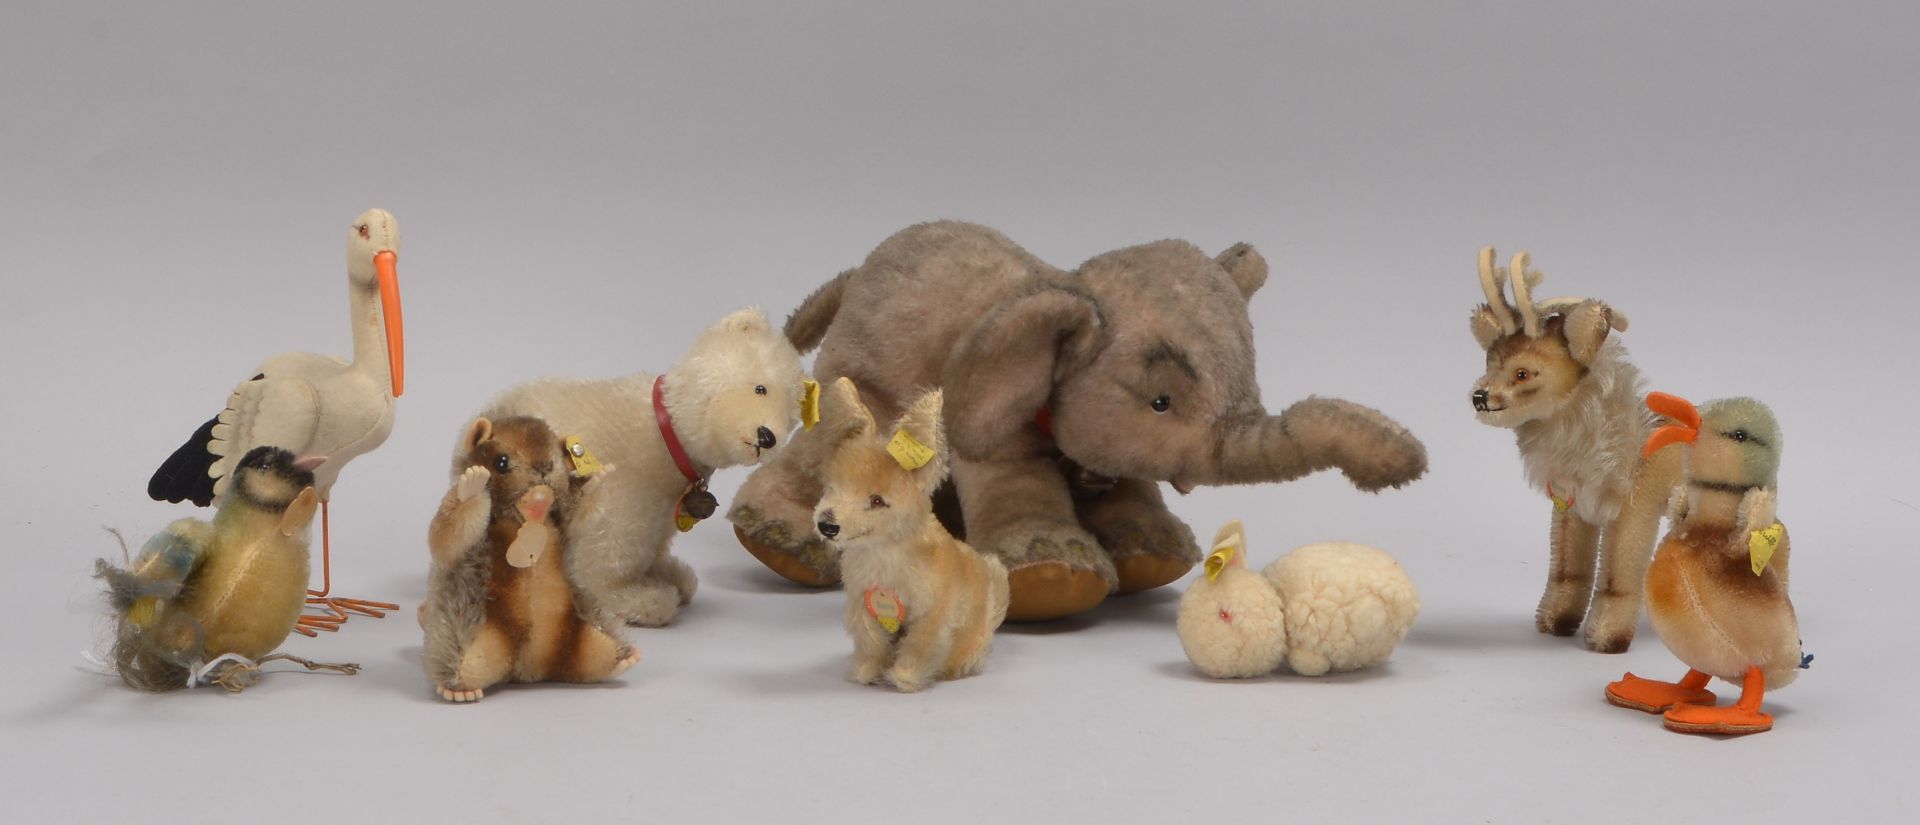 Kleine Sammlung Steiff-Sammlerfiguren, unterschiedliche Tiermotive, verschiedene Gr&ouml;&szlig;en u